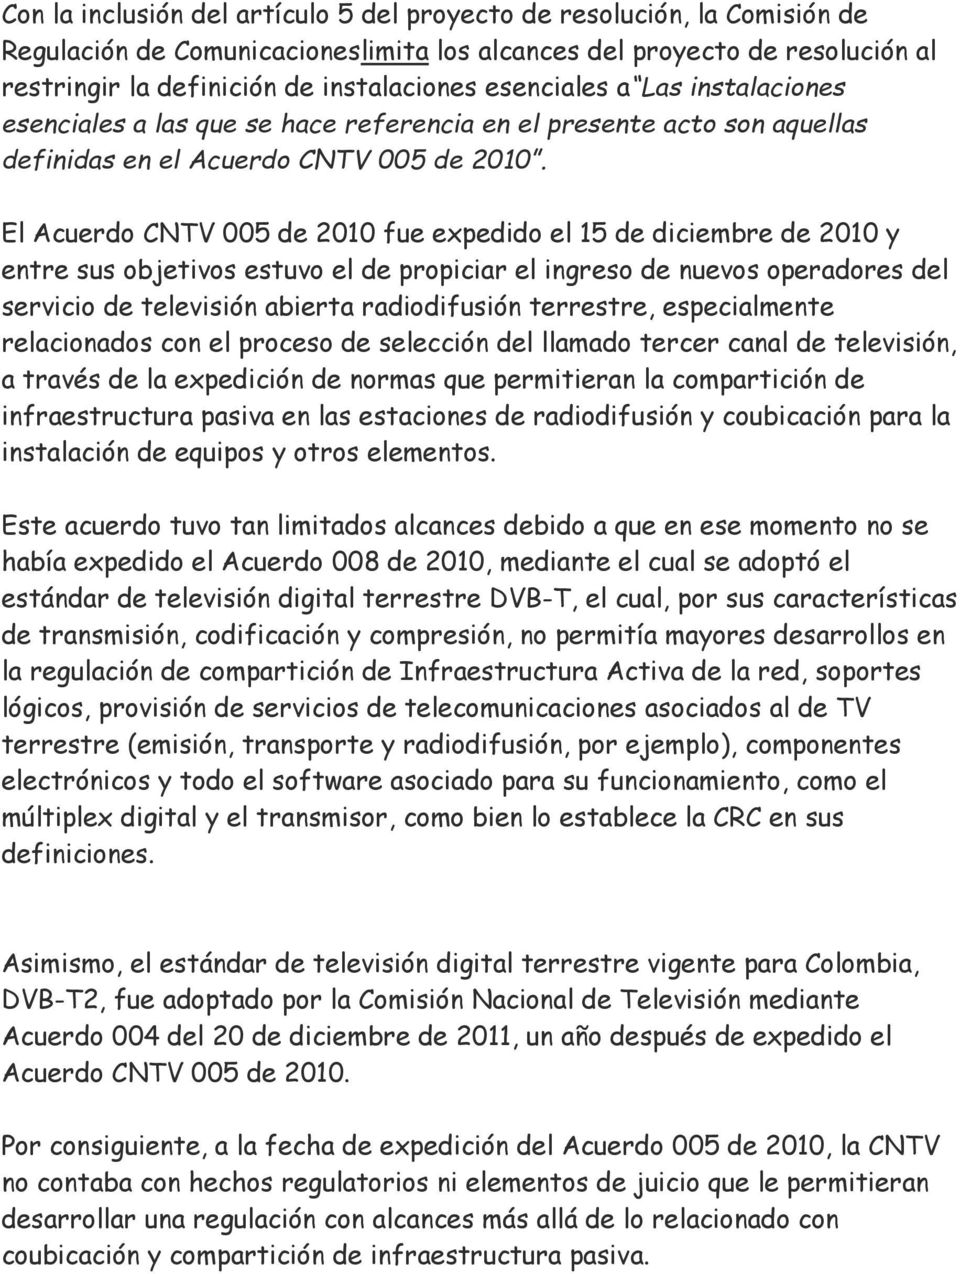 El Acuerdo CNTV 005 de 2010 fue expedido el 15 de diciembre de 2010 y entre sus objetivos estuvo el de propiciar el ingreso de nuevos operadores del servicio de televisión abierta radiodifusión